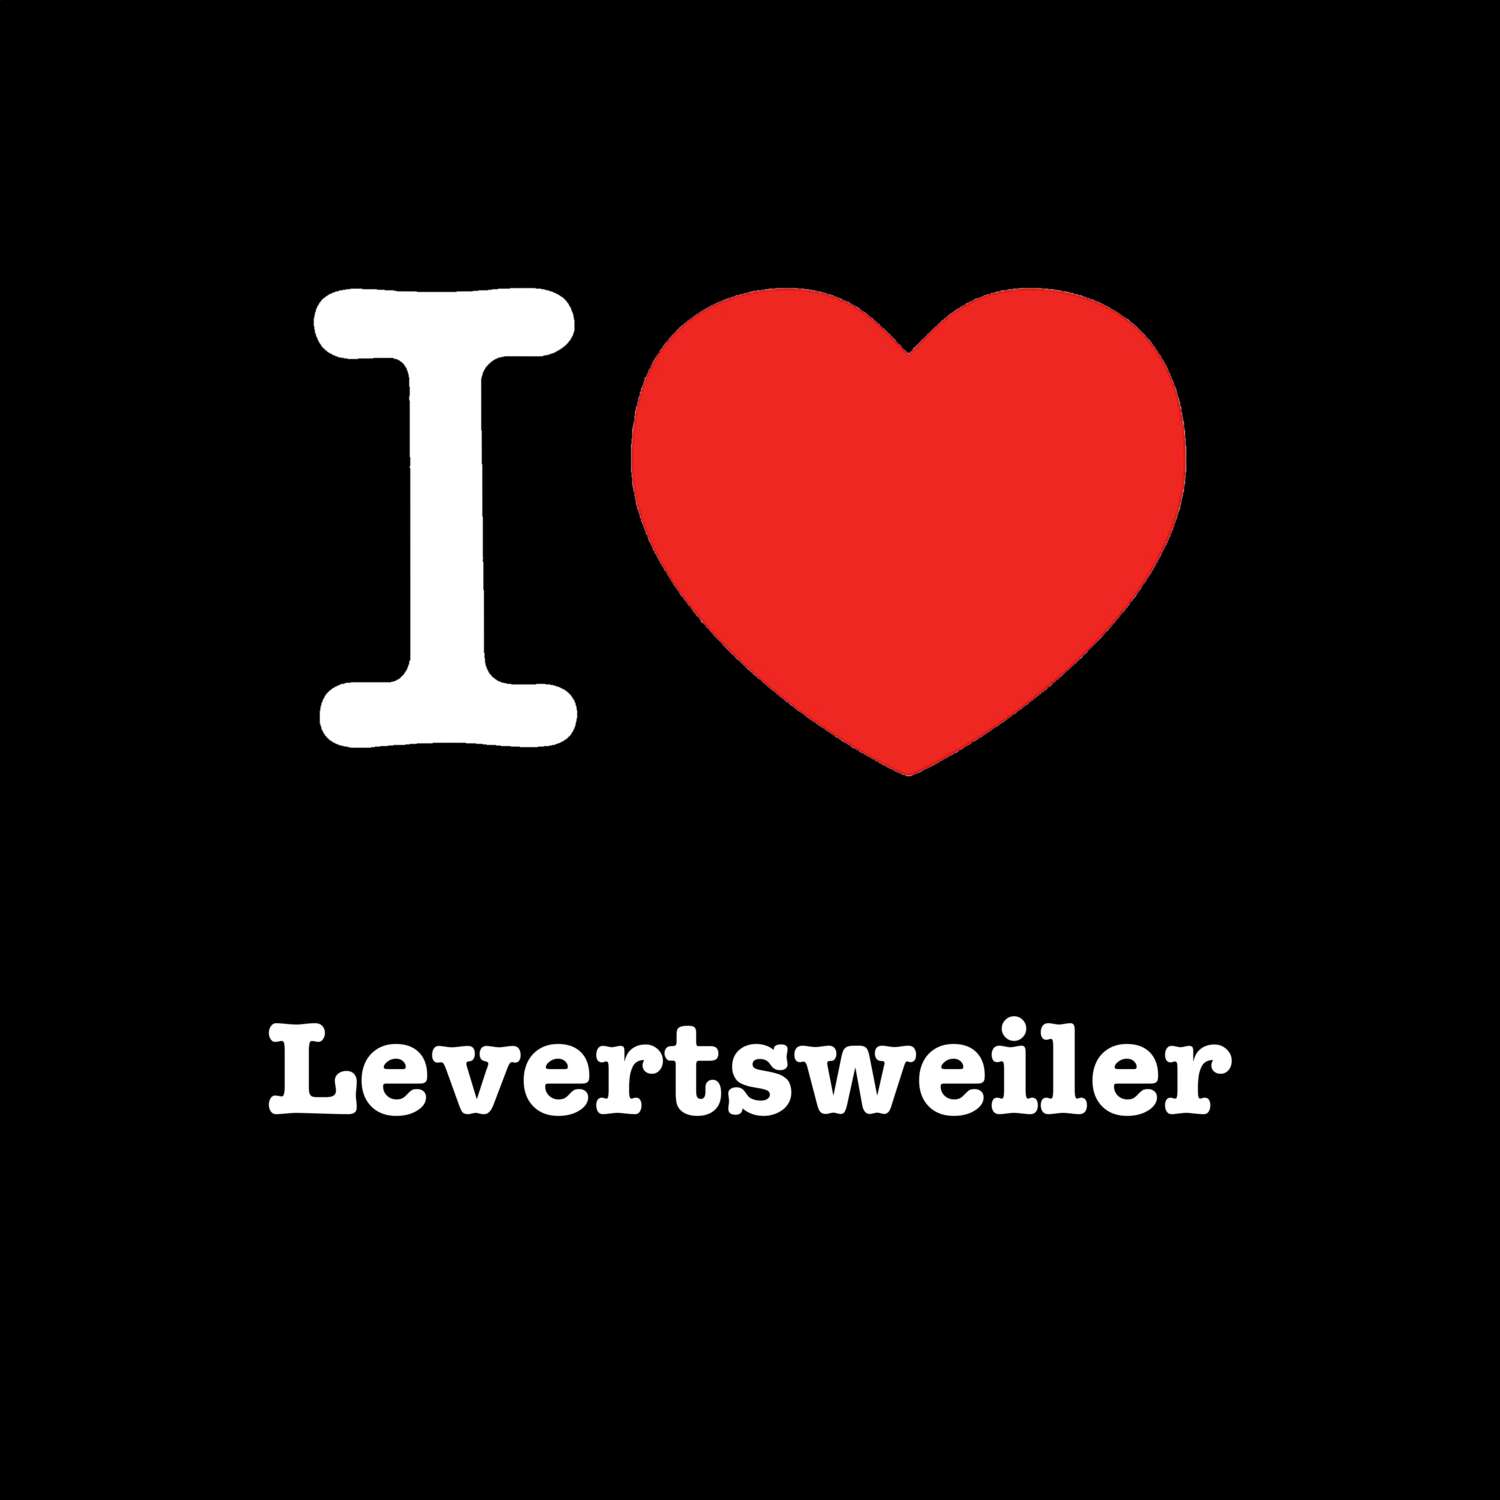 Levertsweiler T-Shirt »I love«